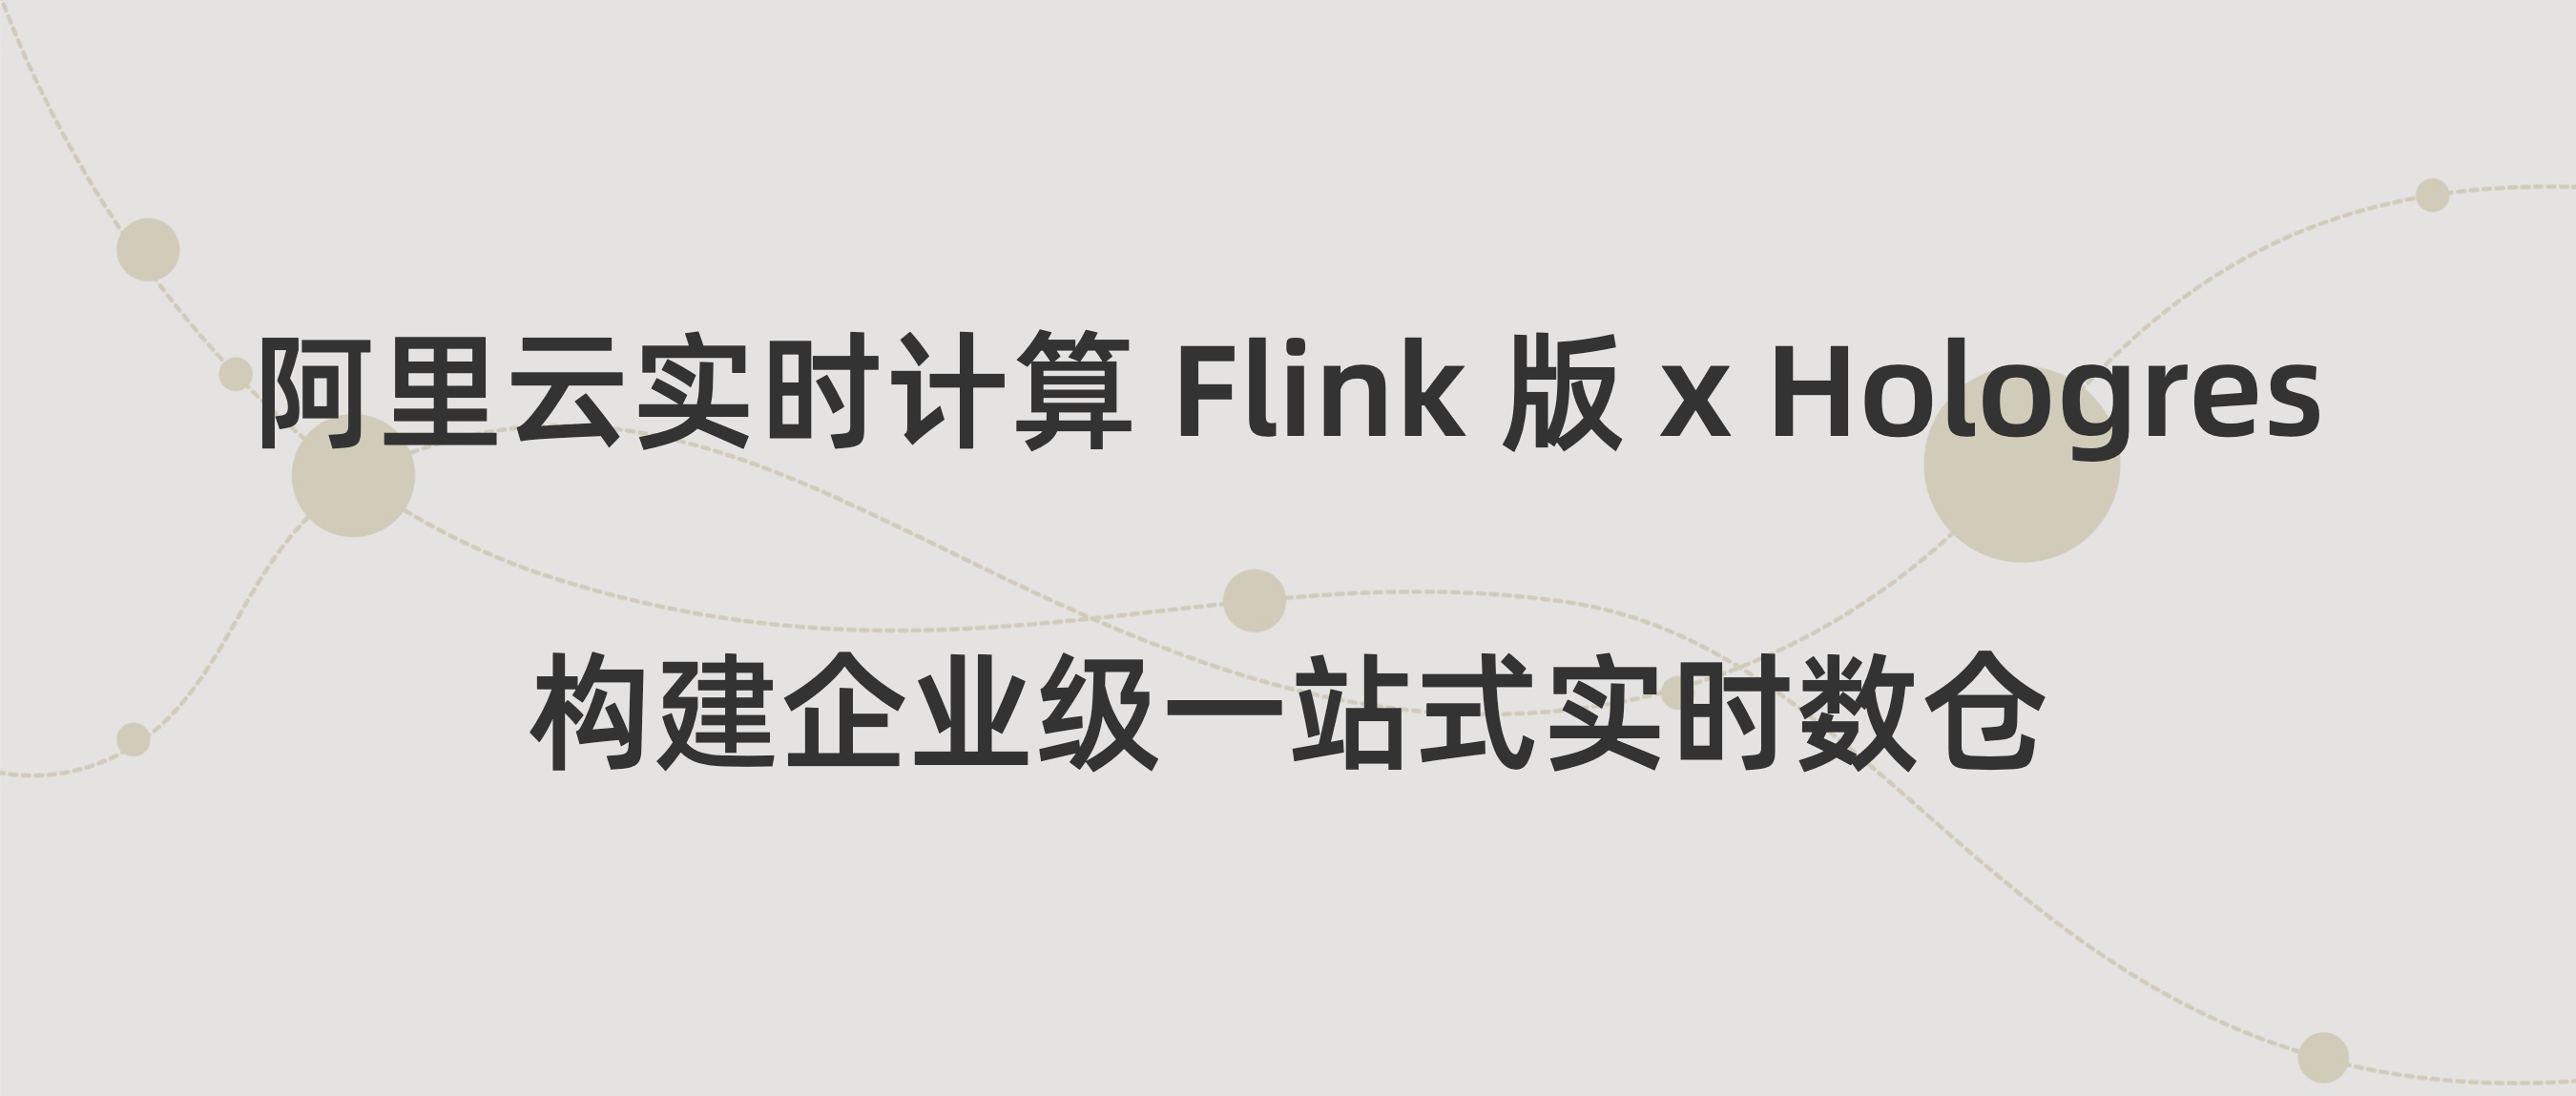 阿里云实时计算 Flink 版 x Hologres: 构建企业级一站式实时数仓